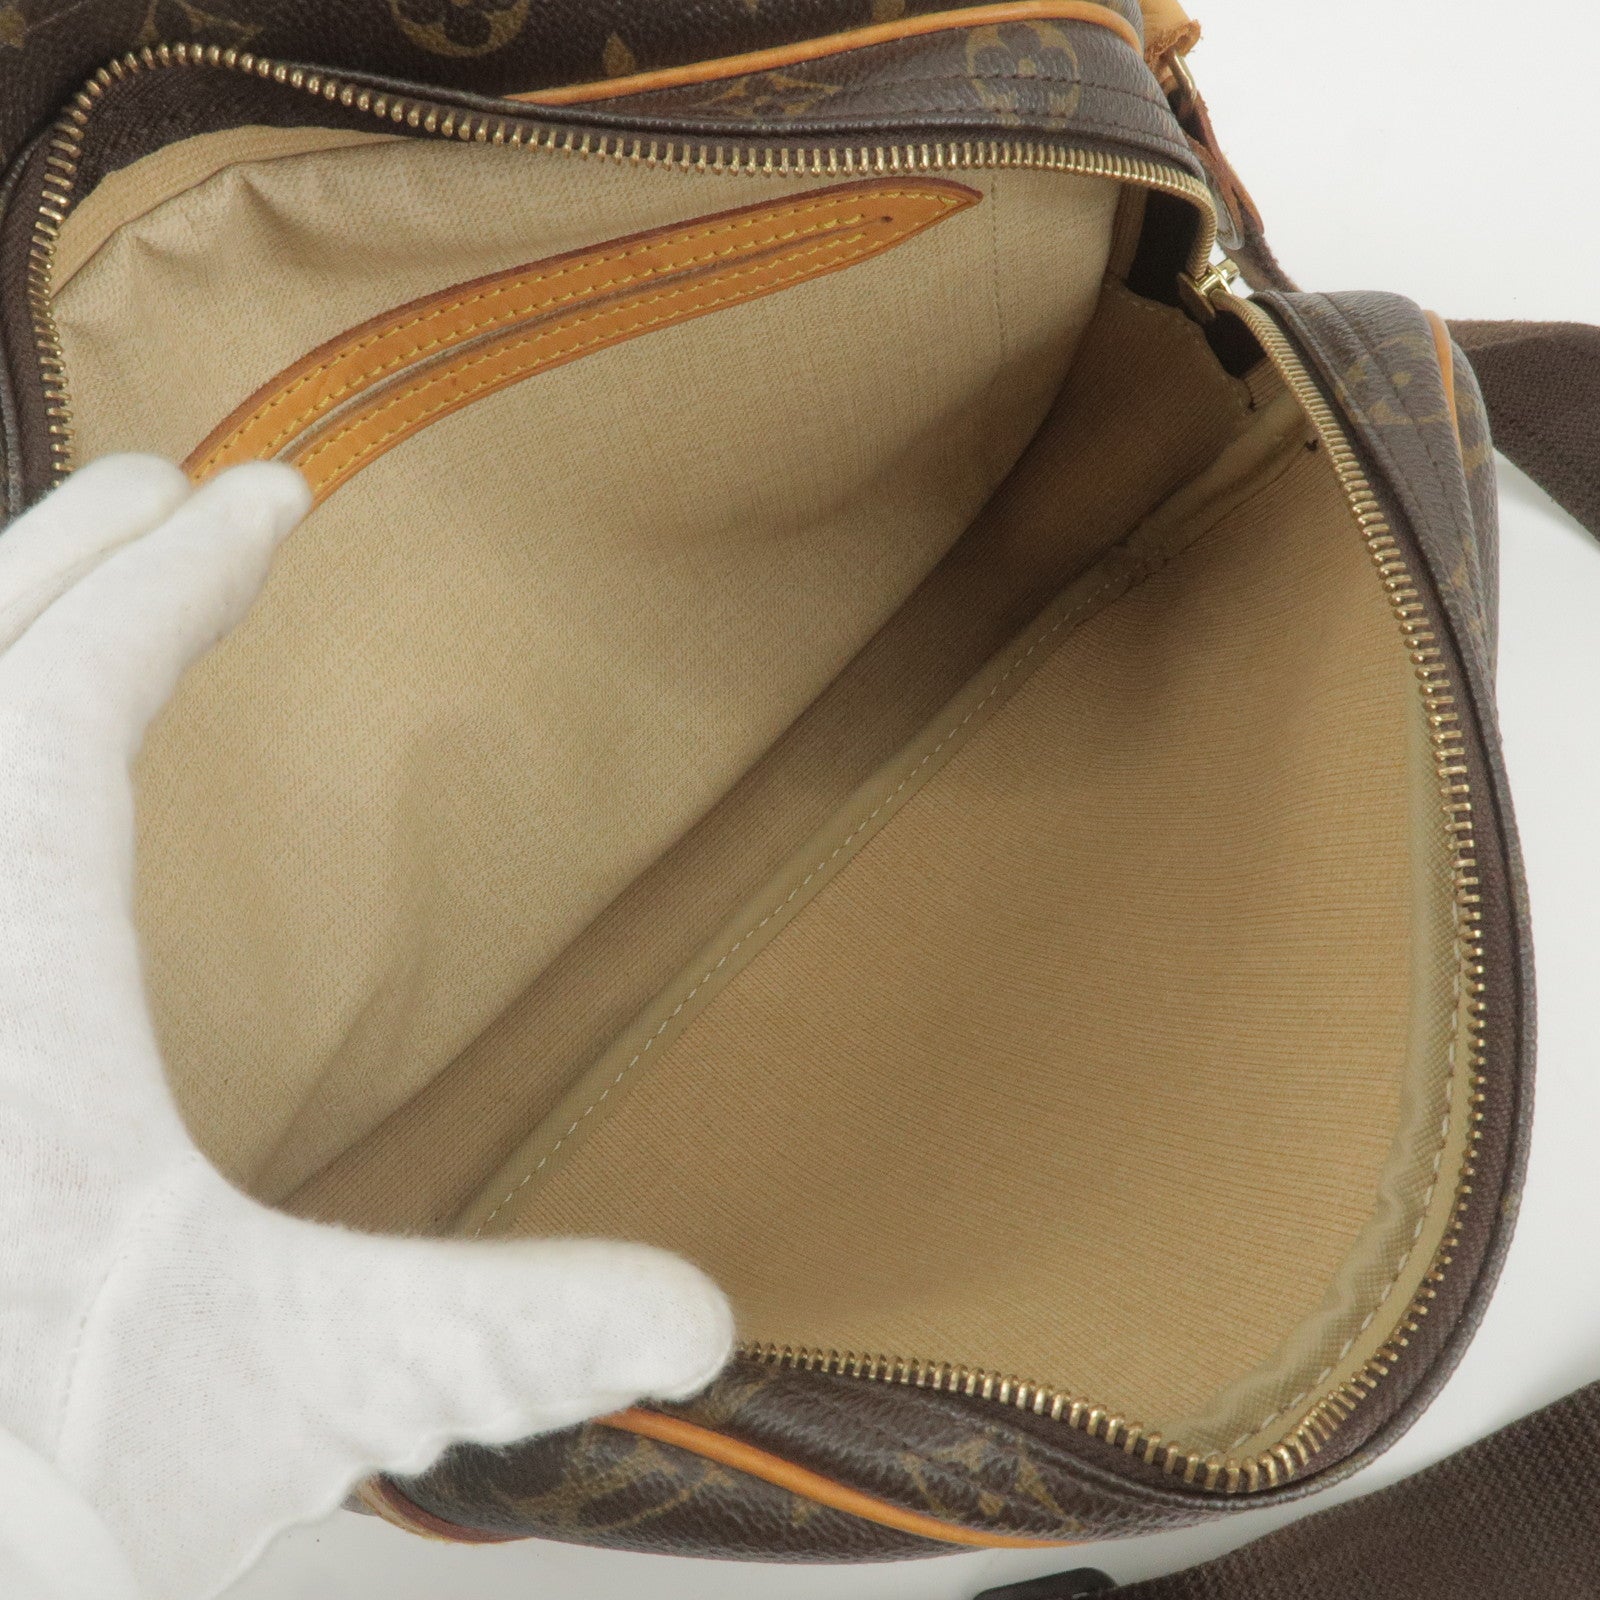 Louis Vuitton Reporter PM Monogram Canvas Shoulder Bag on SALE